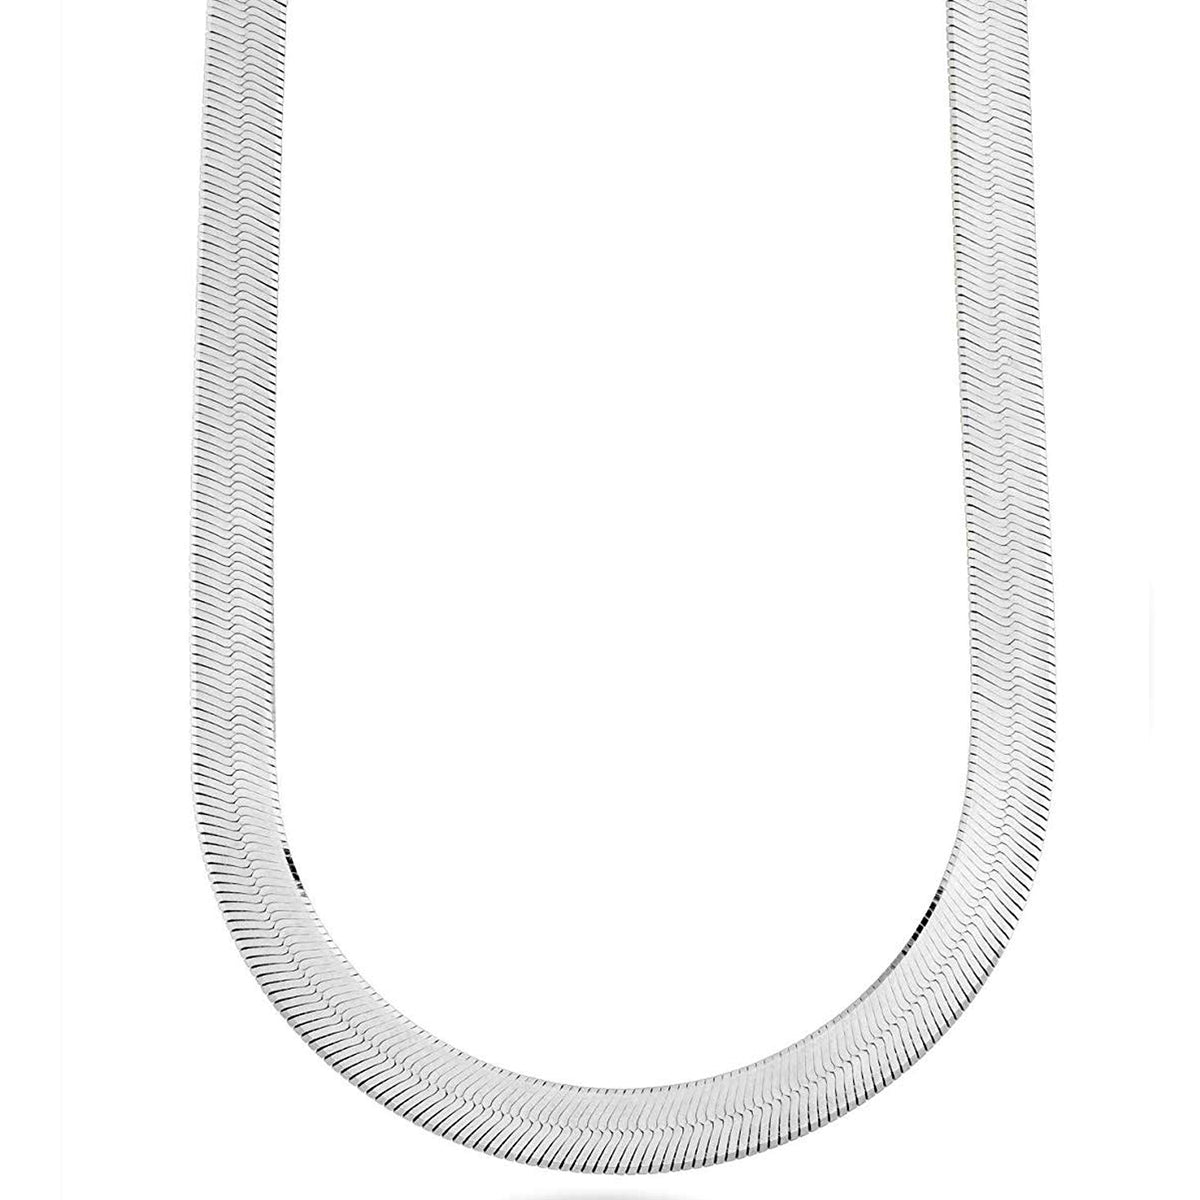 Sterling Silver Imperial Herringbone Chain Halsband, 8 mm fina designersmycken för män och kvinnor